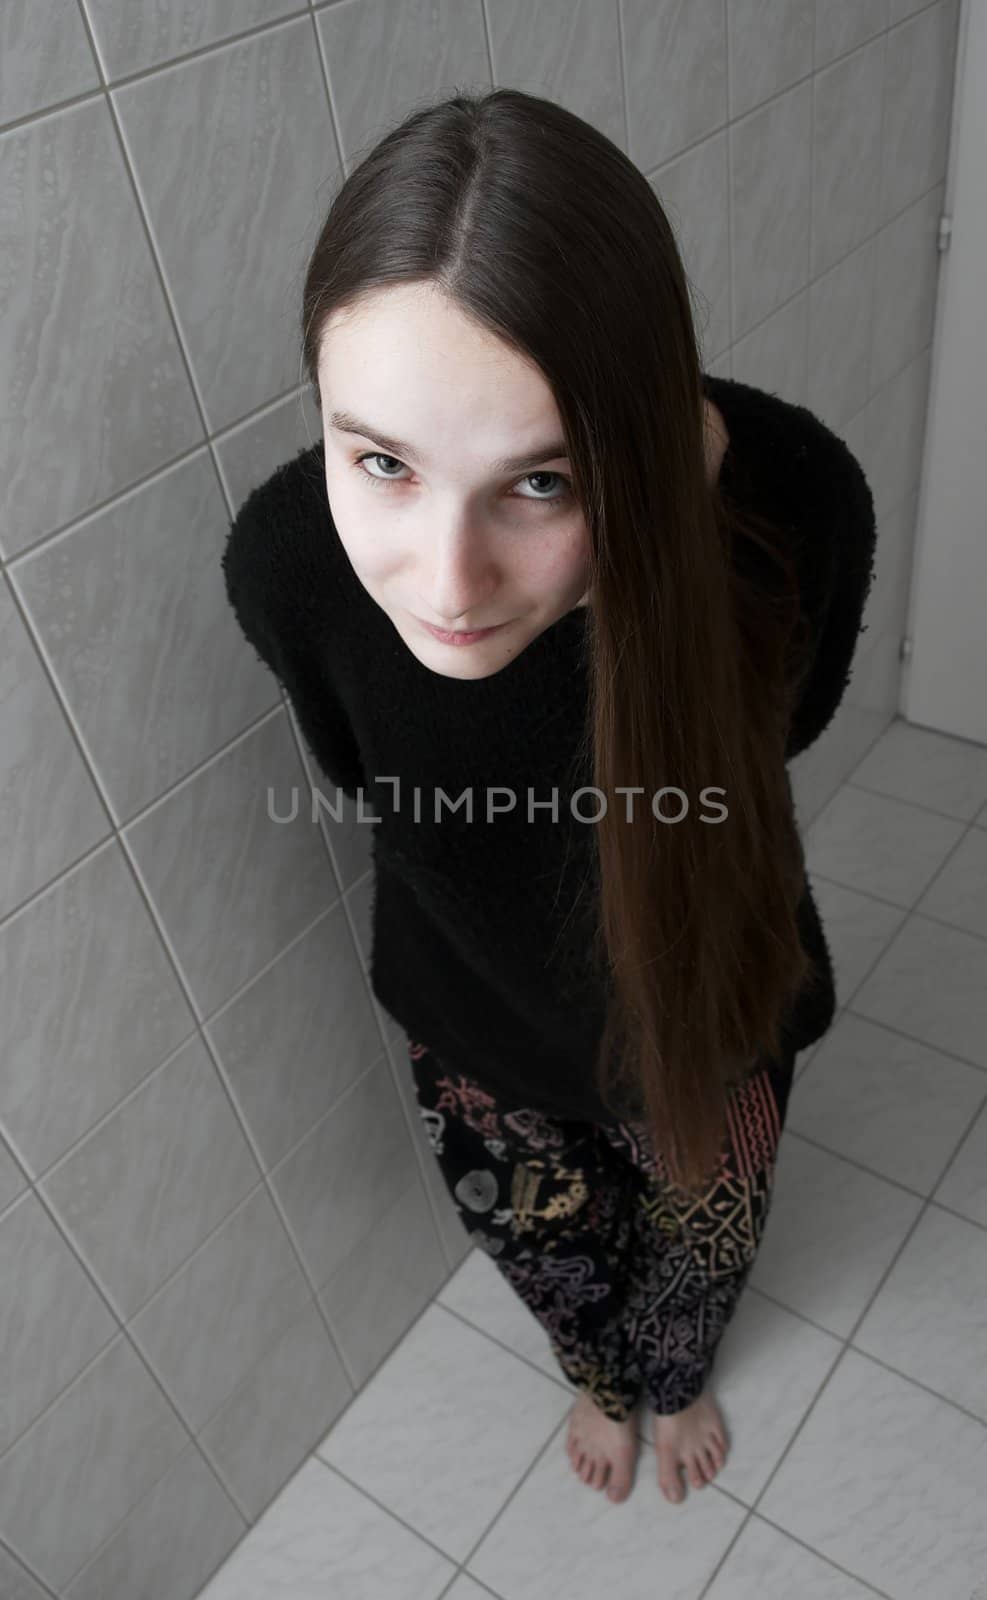 Girl standing in the bathroom, looking upwards